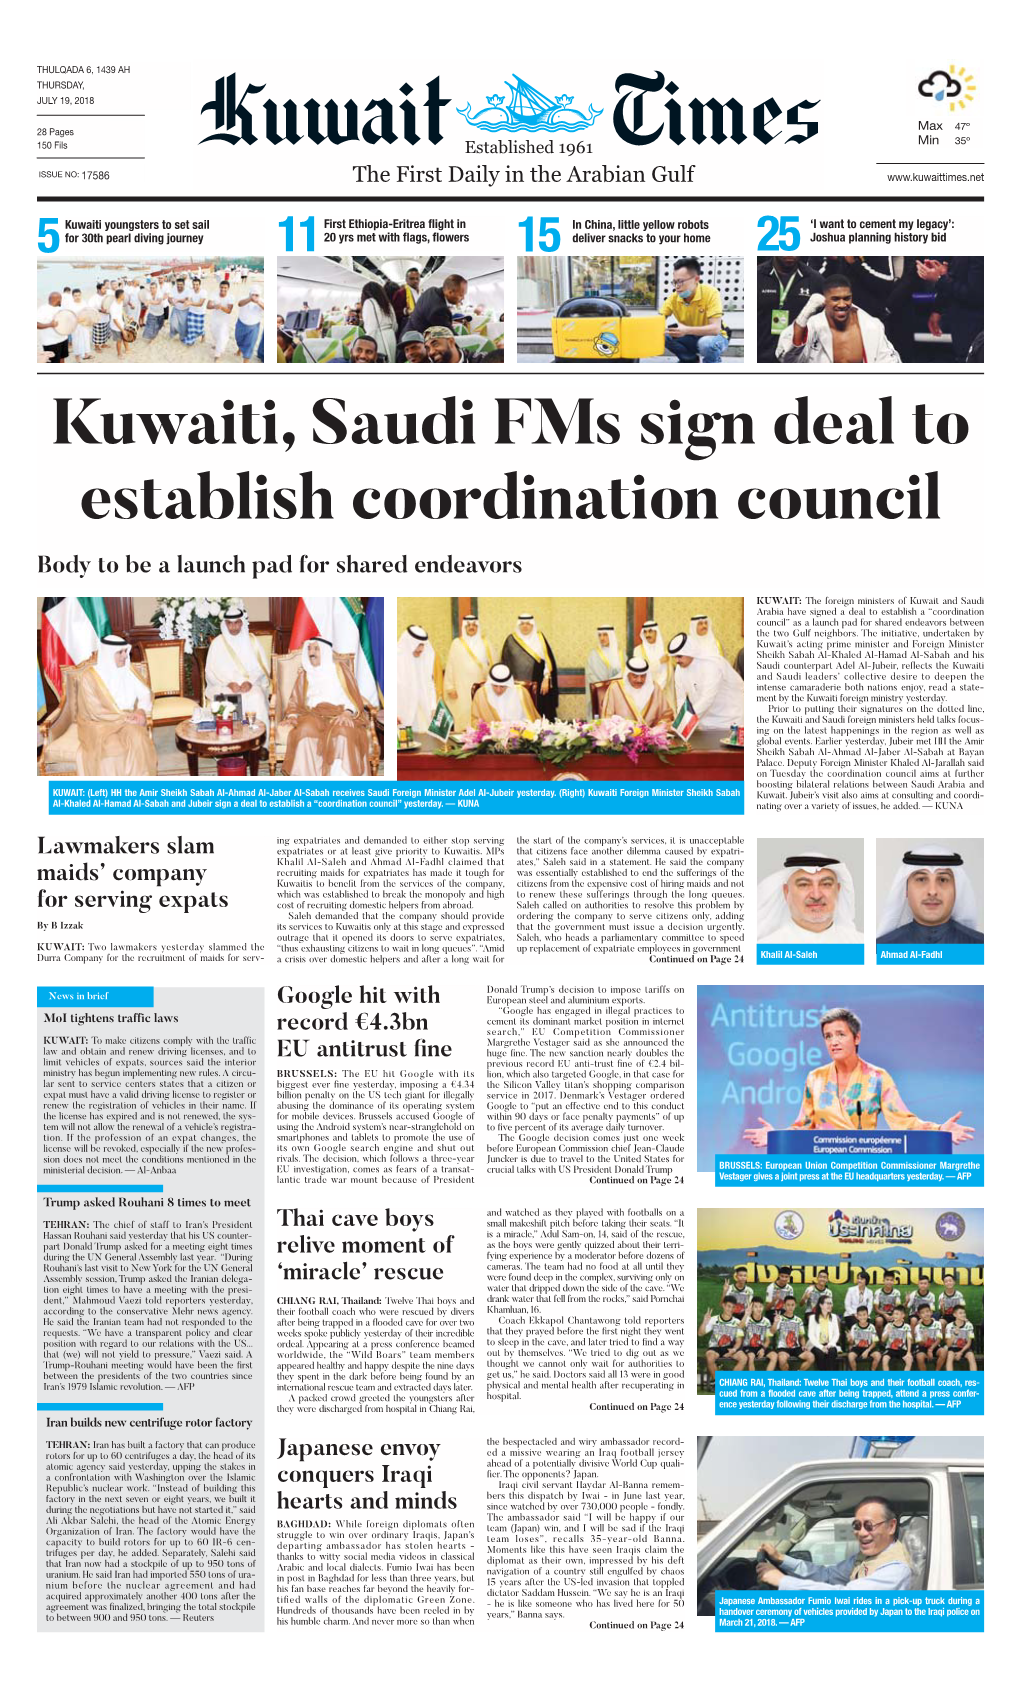 Kuwaittimes 19-7-2018.Qxp Layout 1